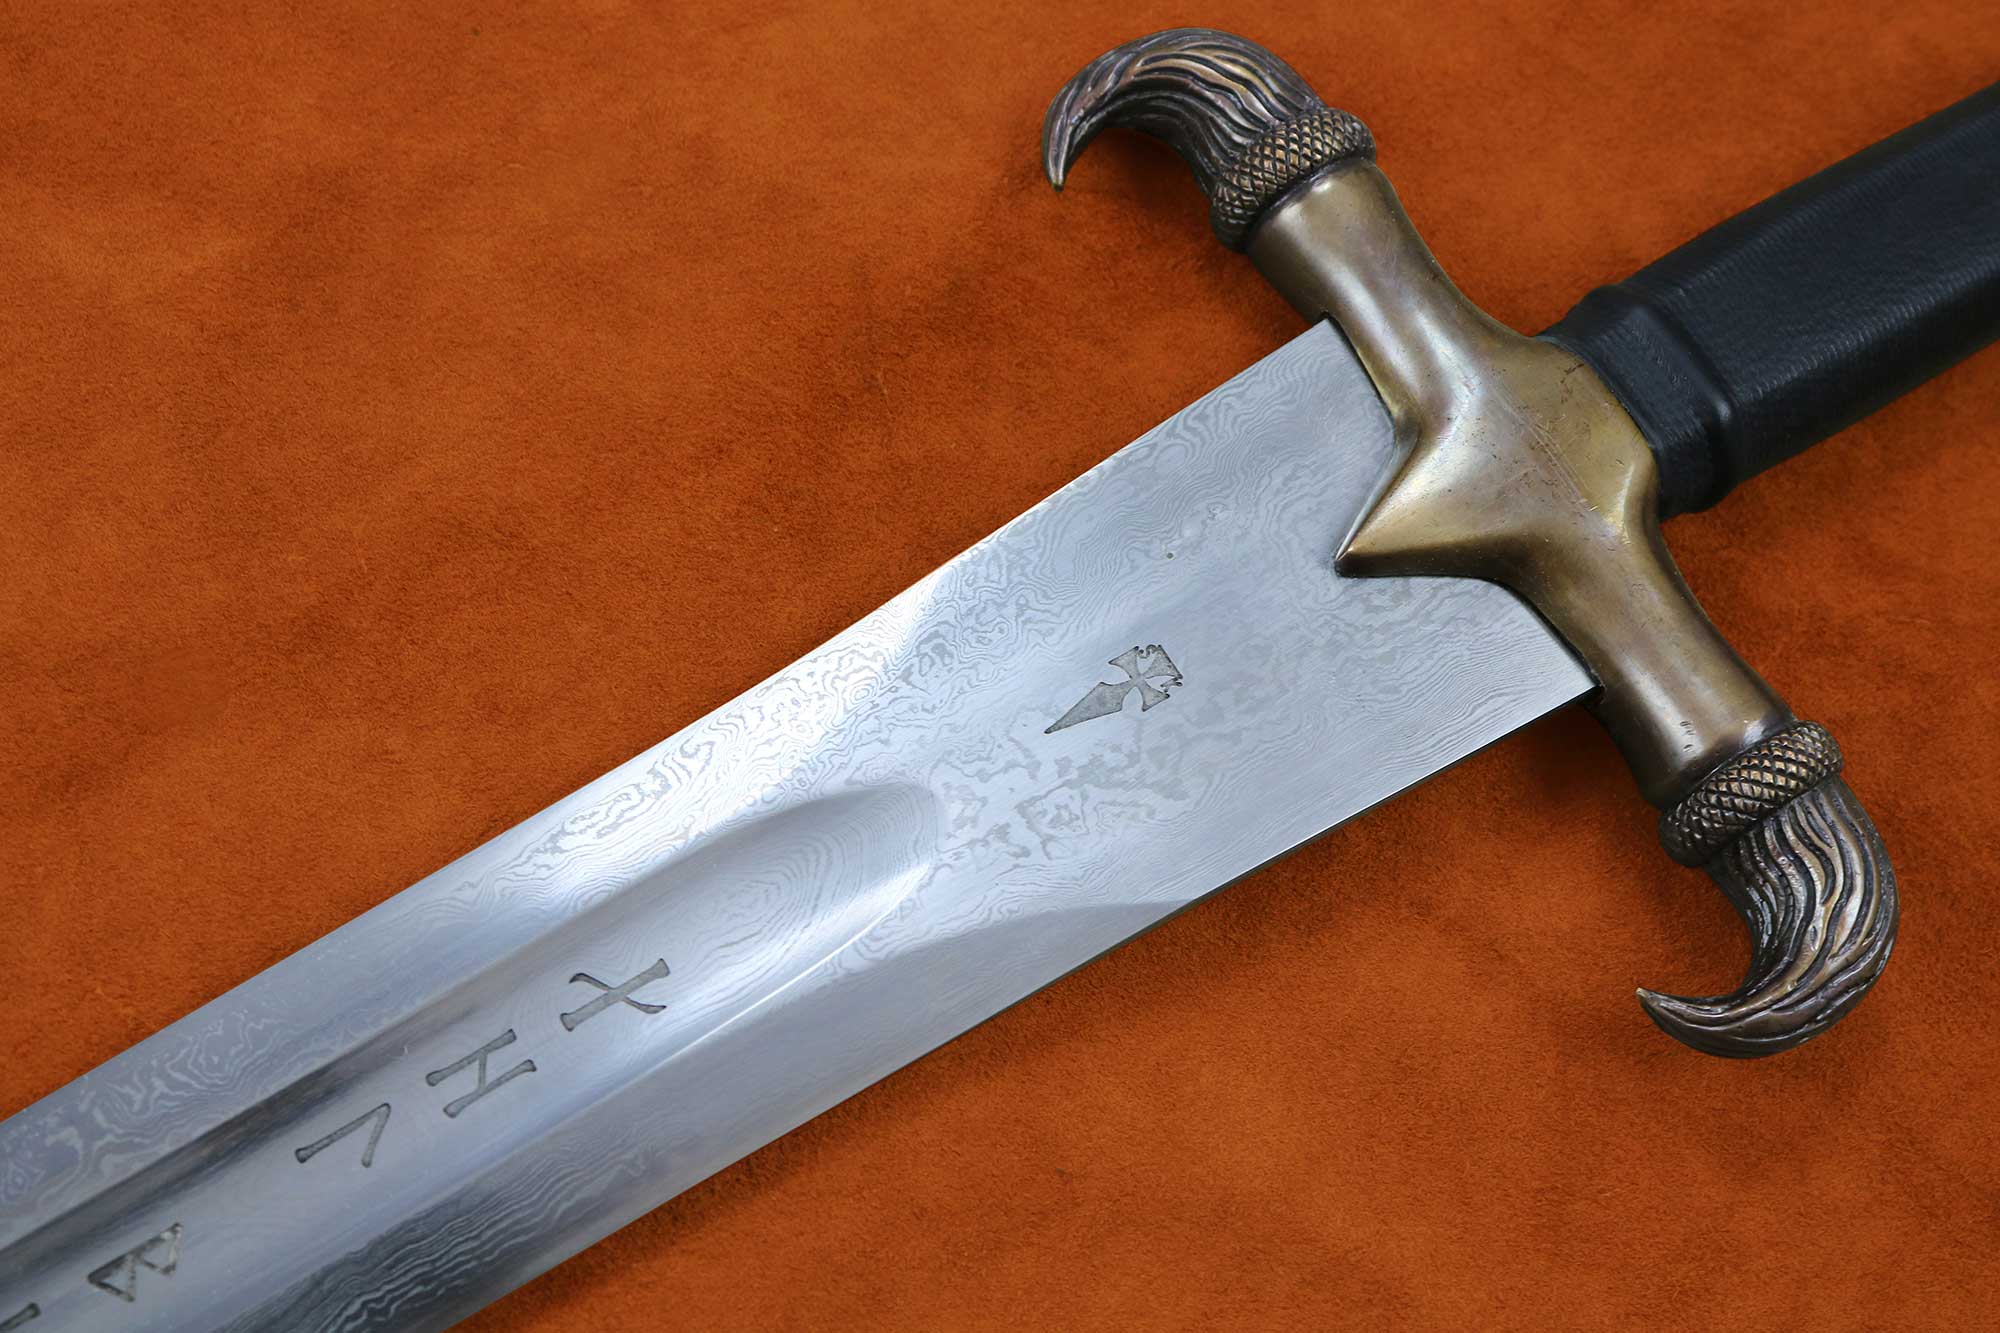 Erland Sword Folded Steel Blade 